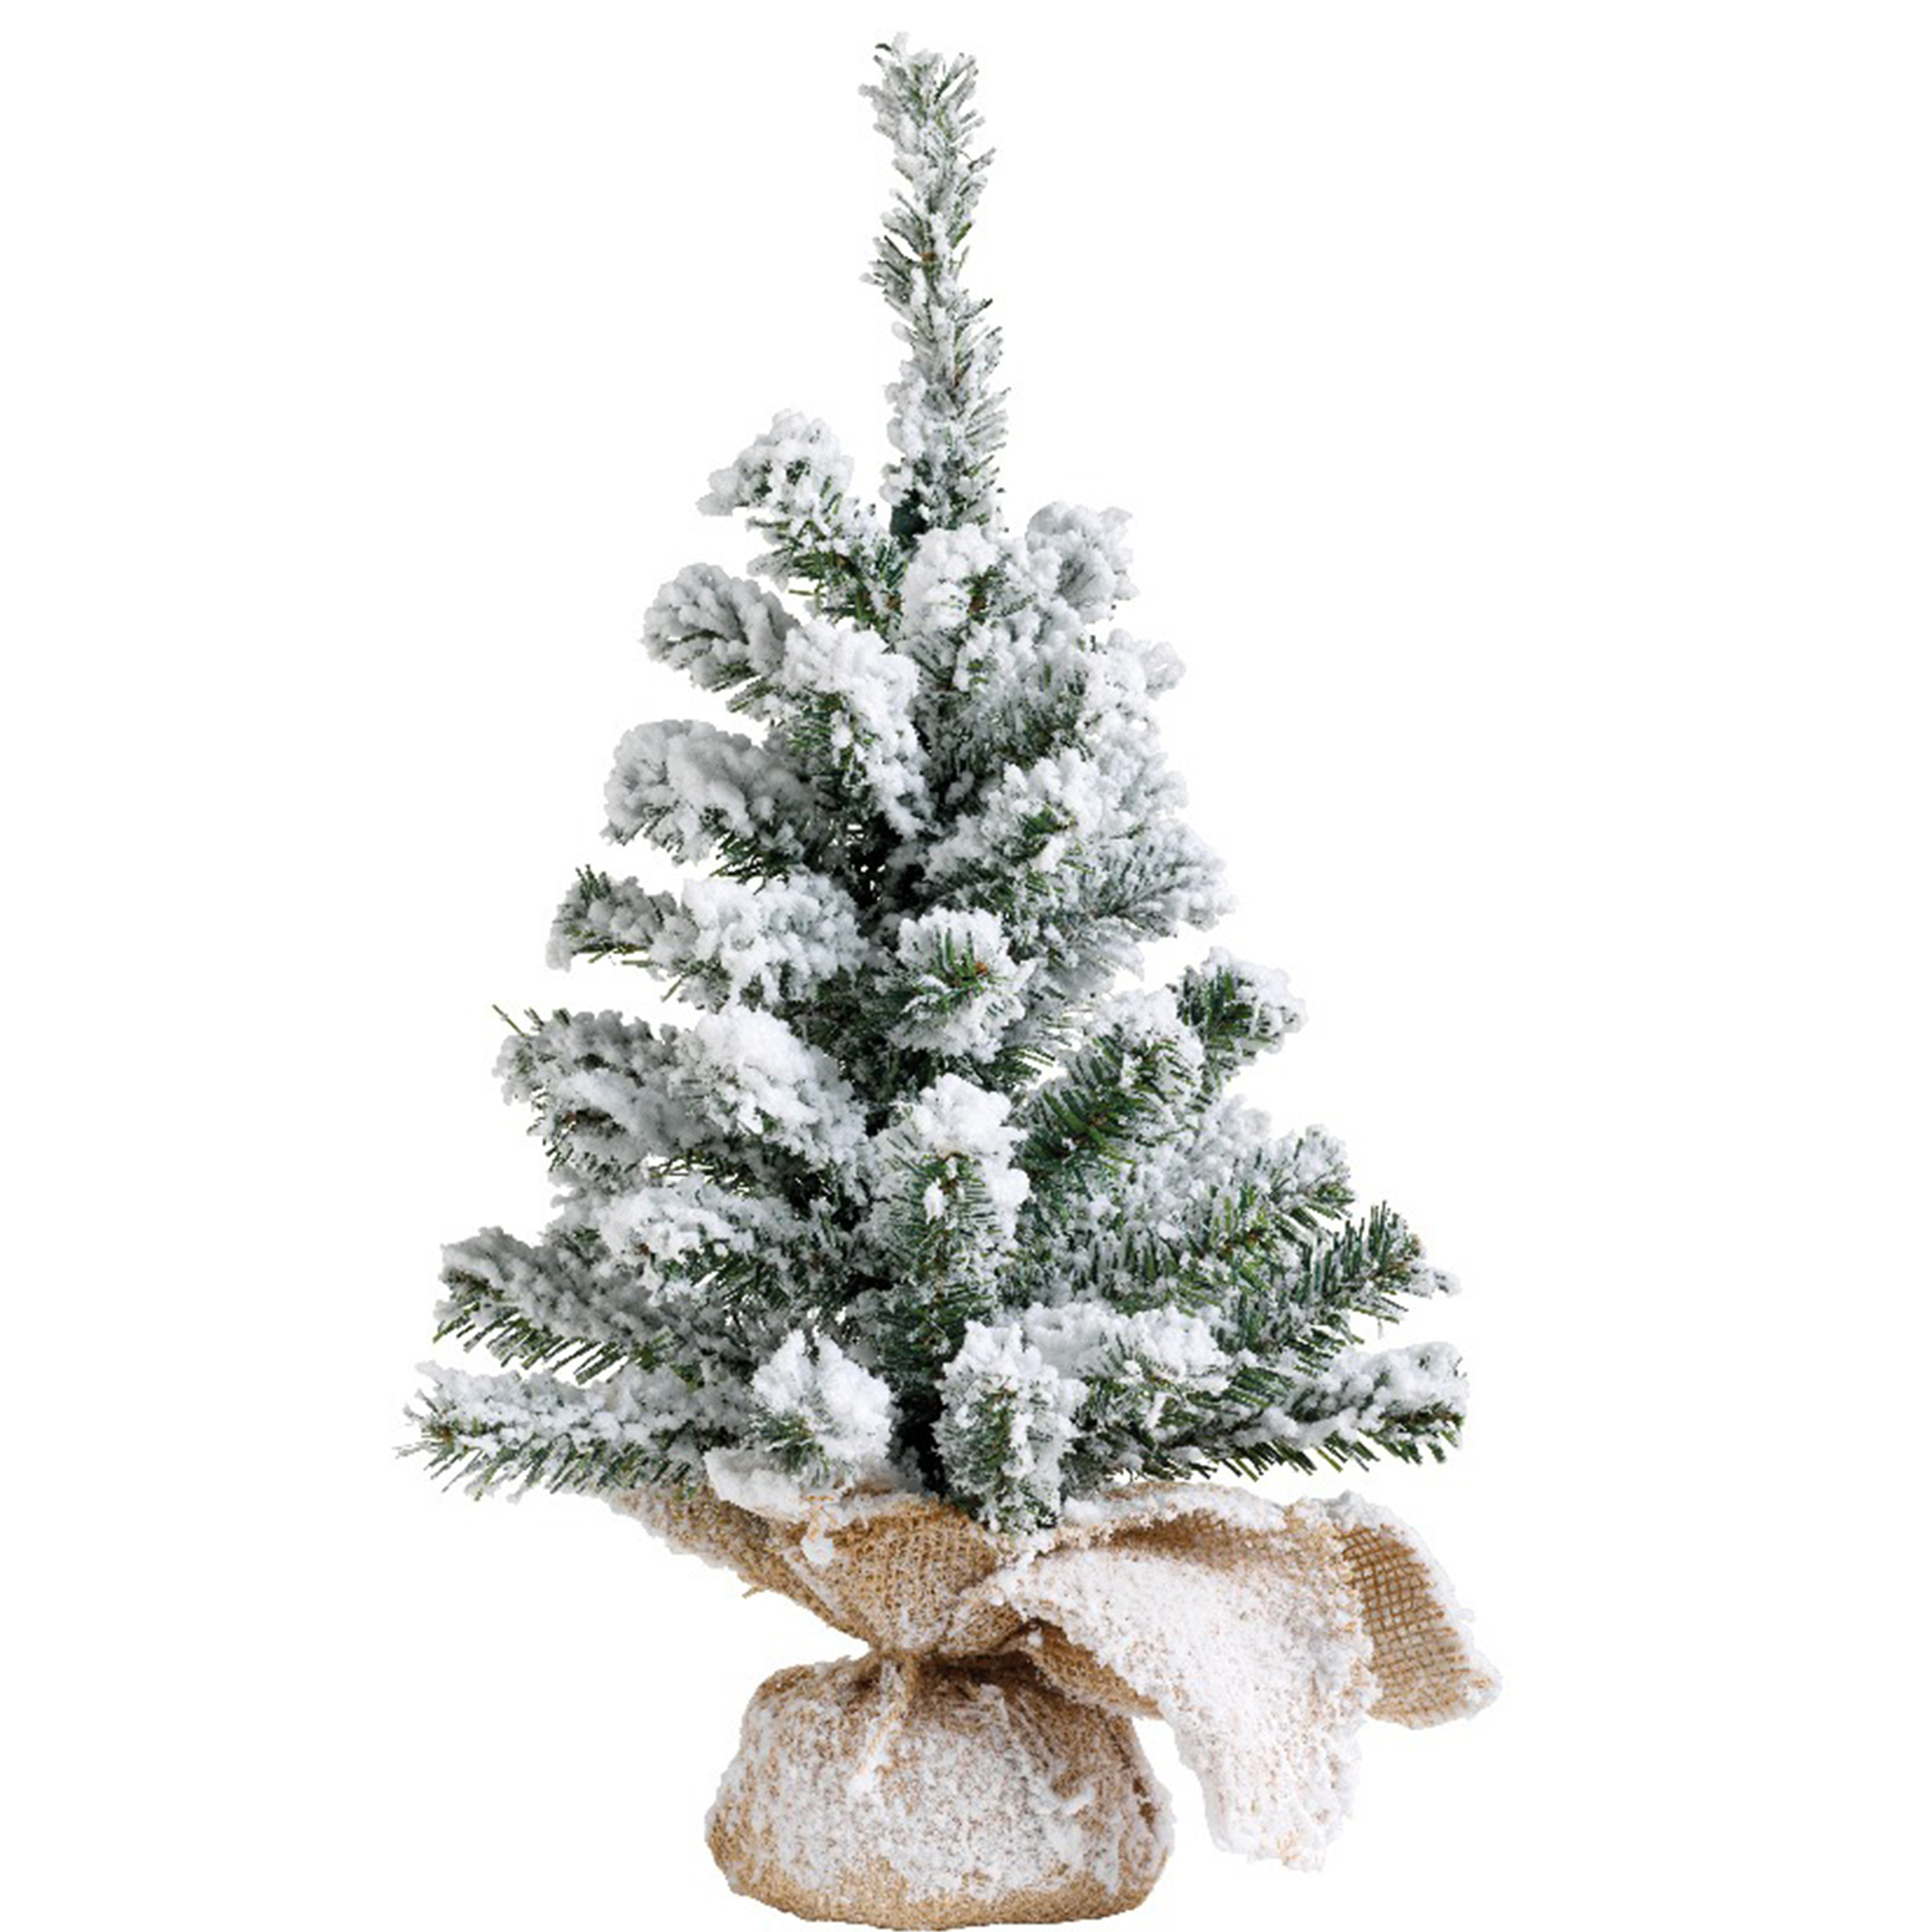 Kunstboom-kunst kerstboom groen met sneeuw 45 cm